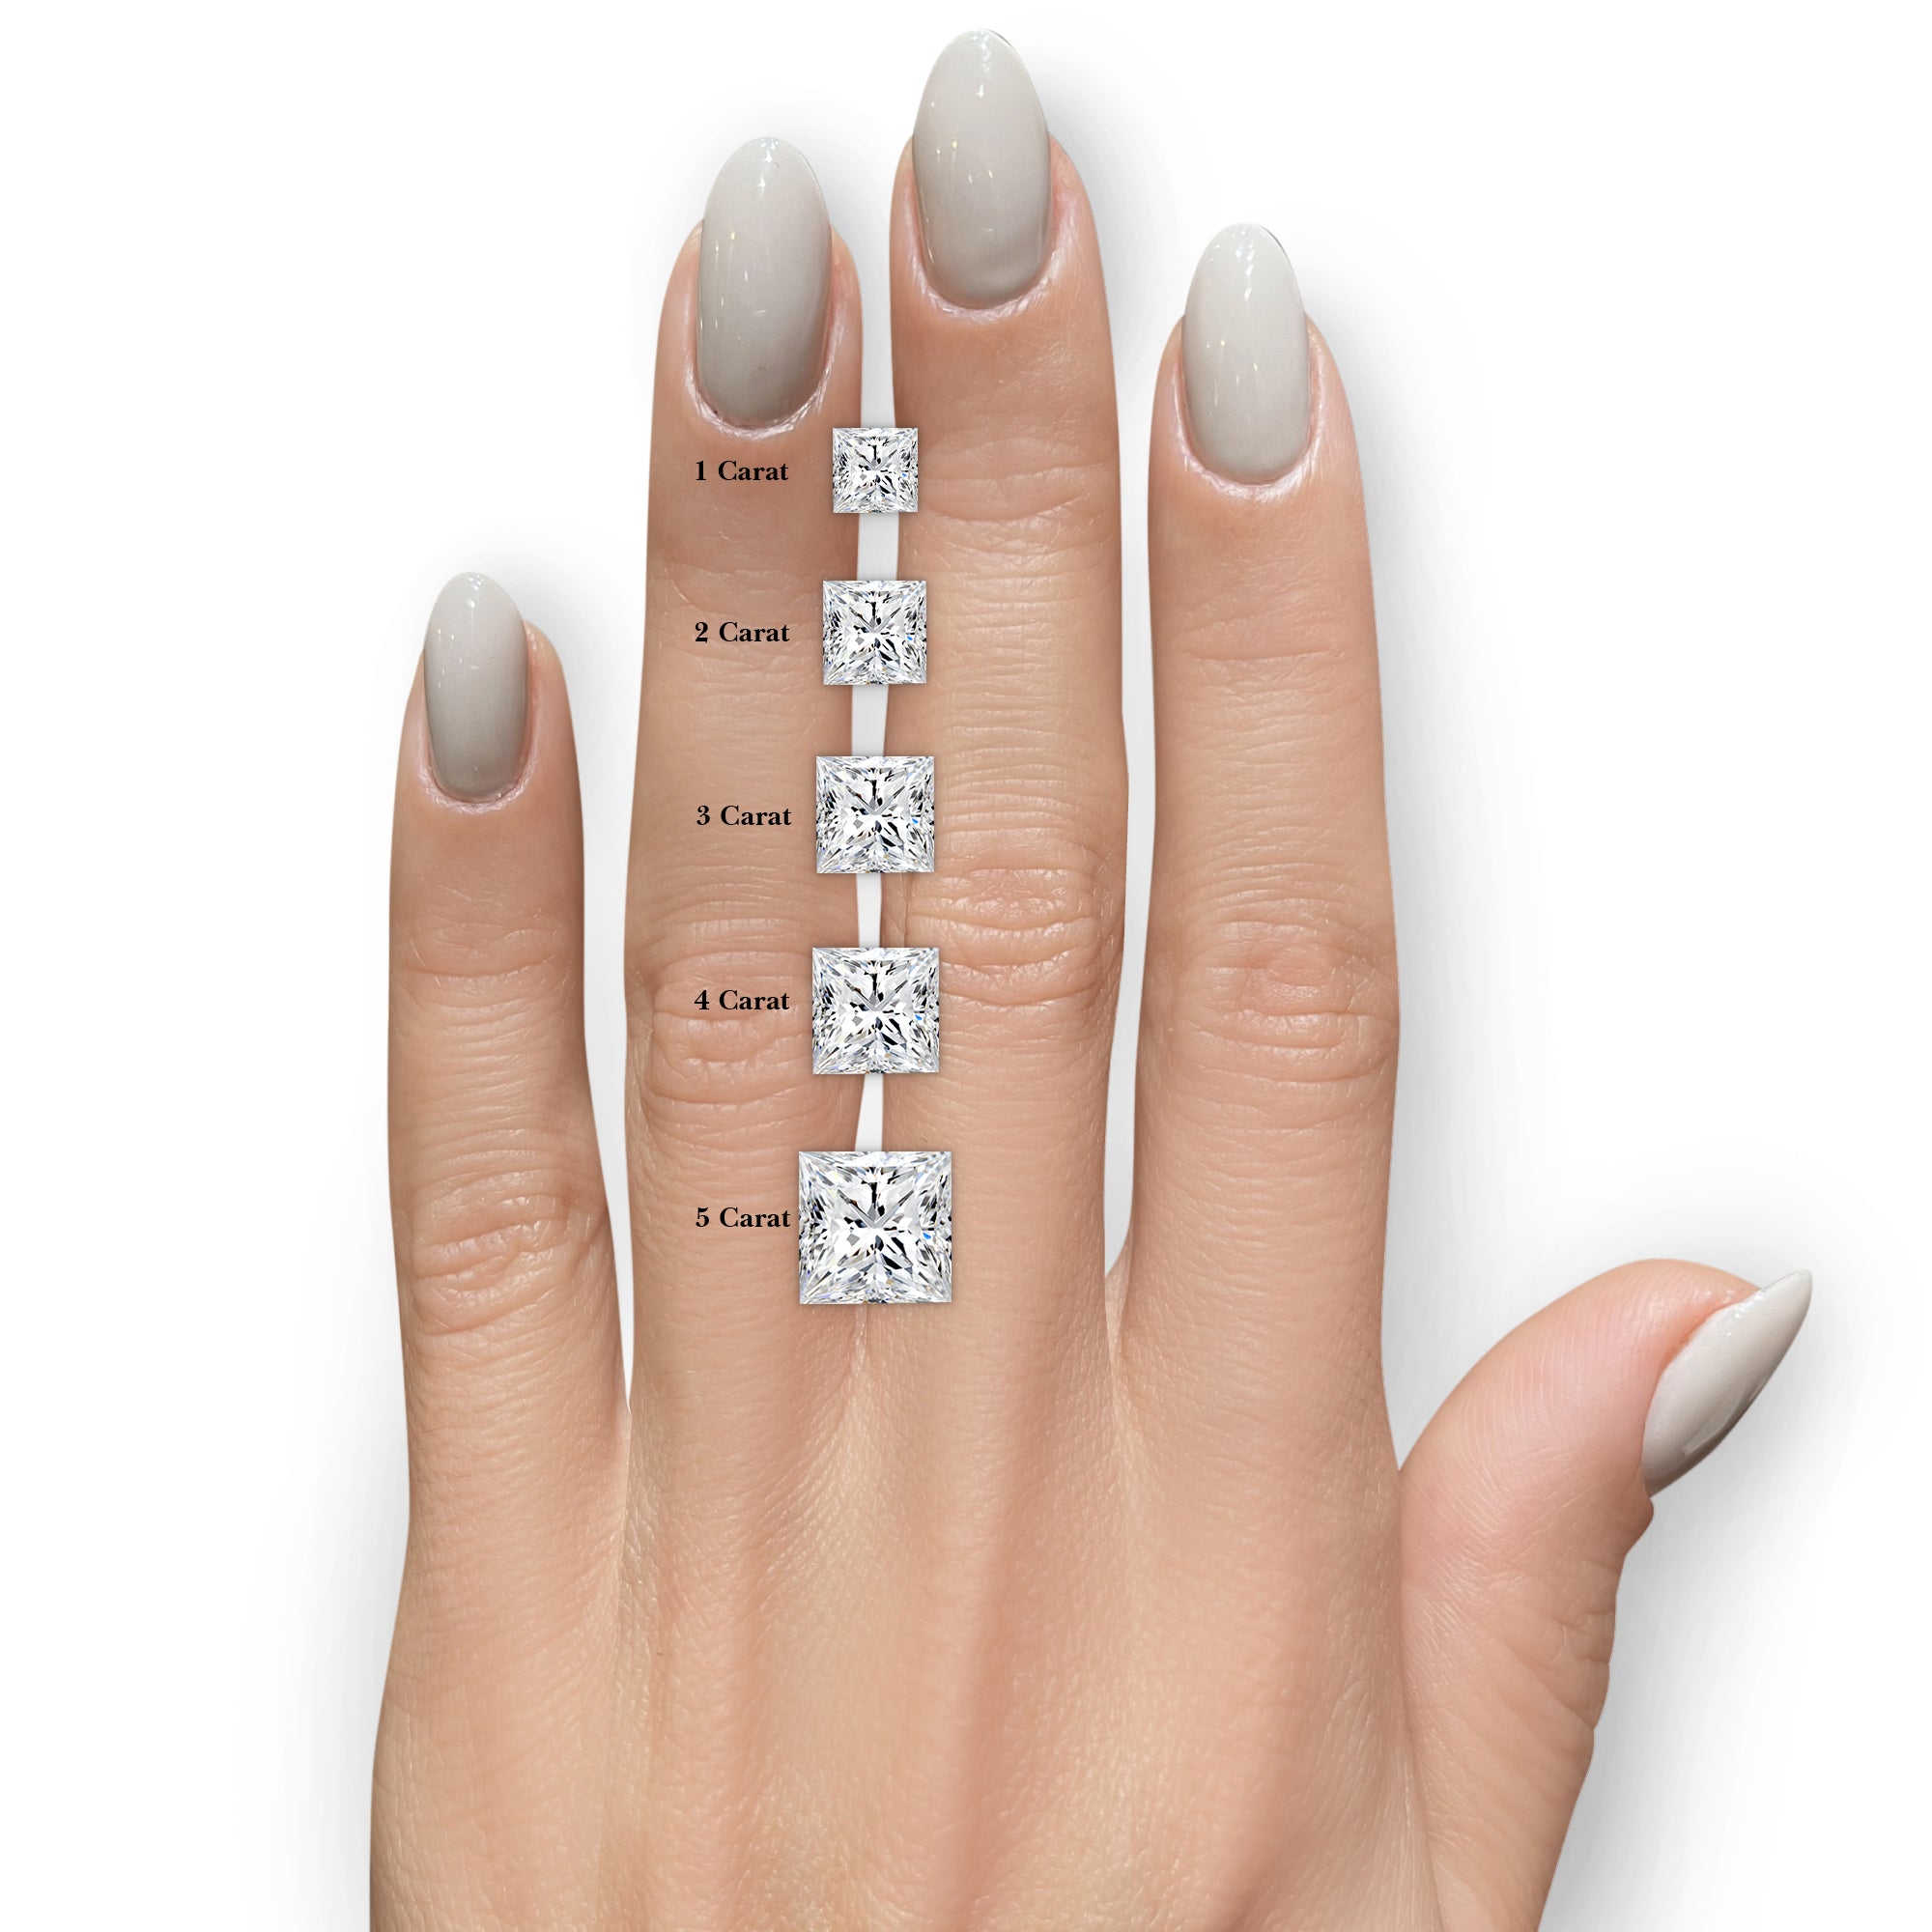 Selena Diamond Engagement Ring -14K White Gold